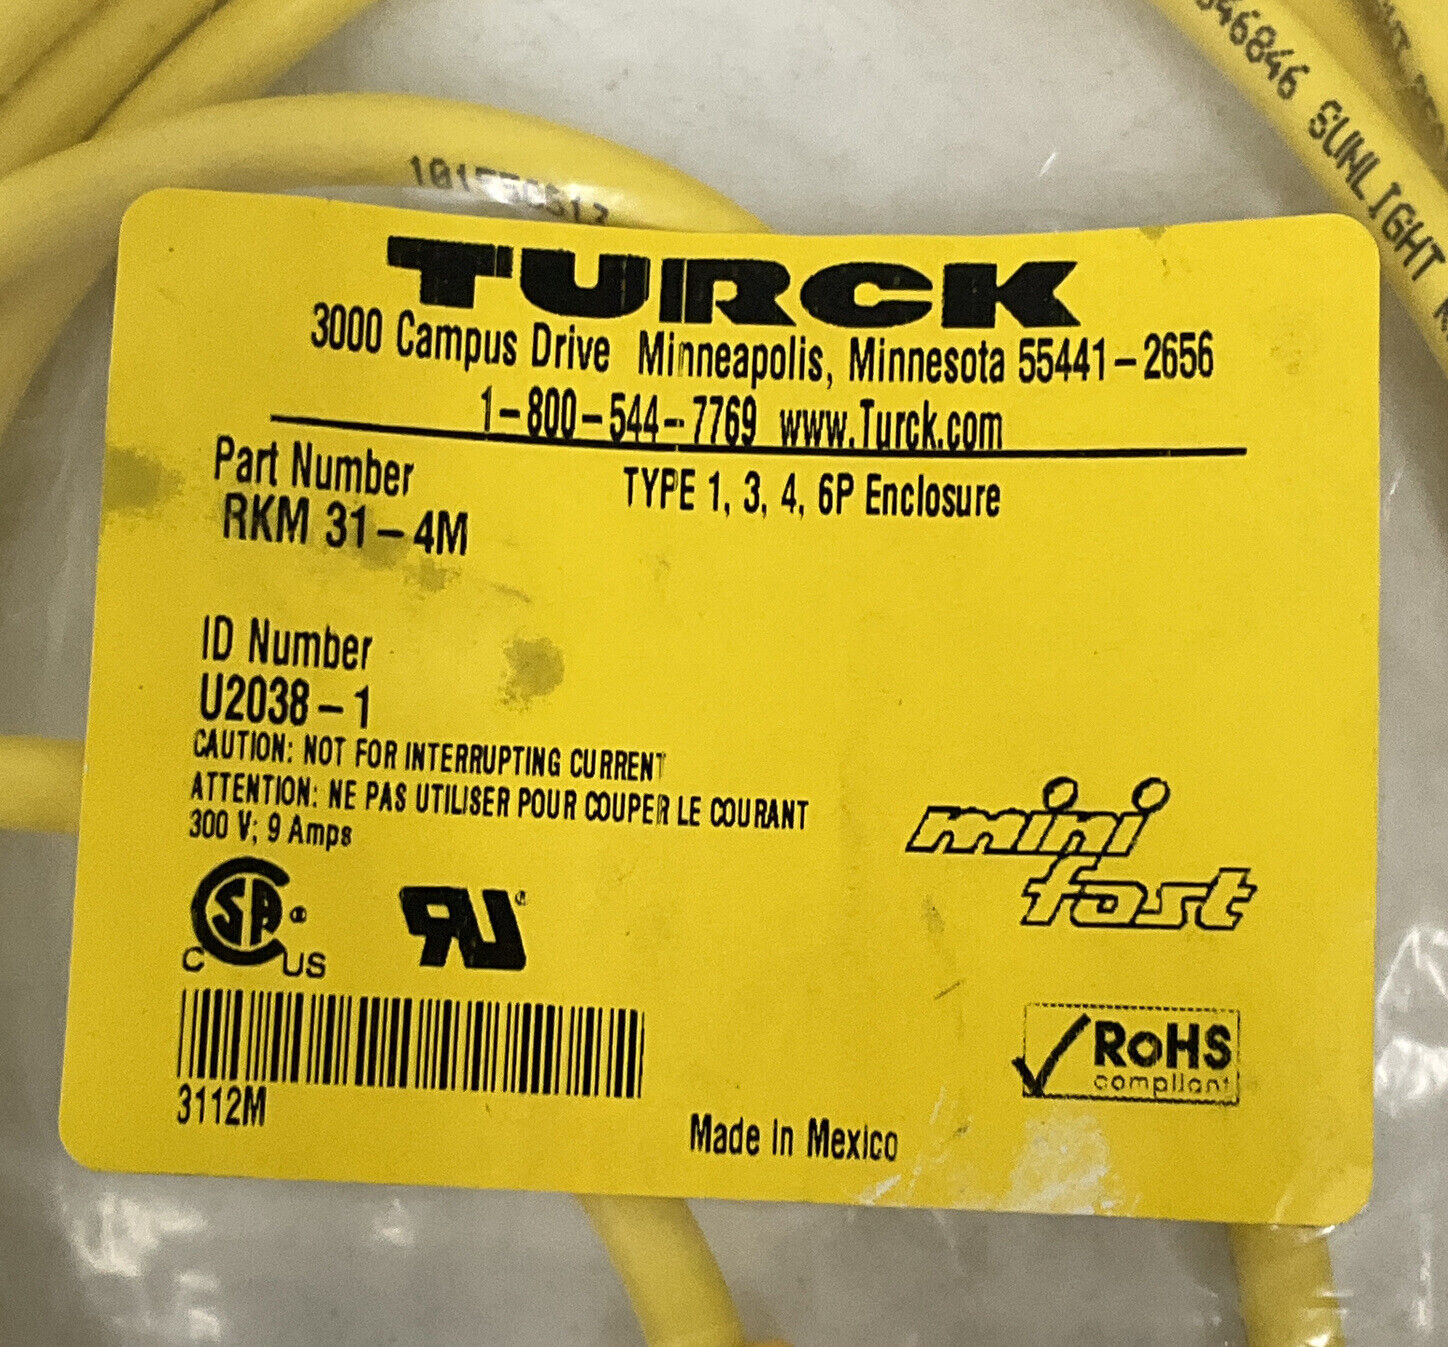 Turck RKM31-4M / U-2038-1 New MiniFast 3-Pin Female Cable 300V,  9 Amp (CBL142) - 0